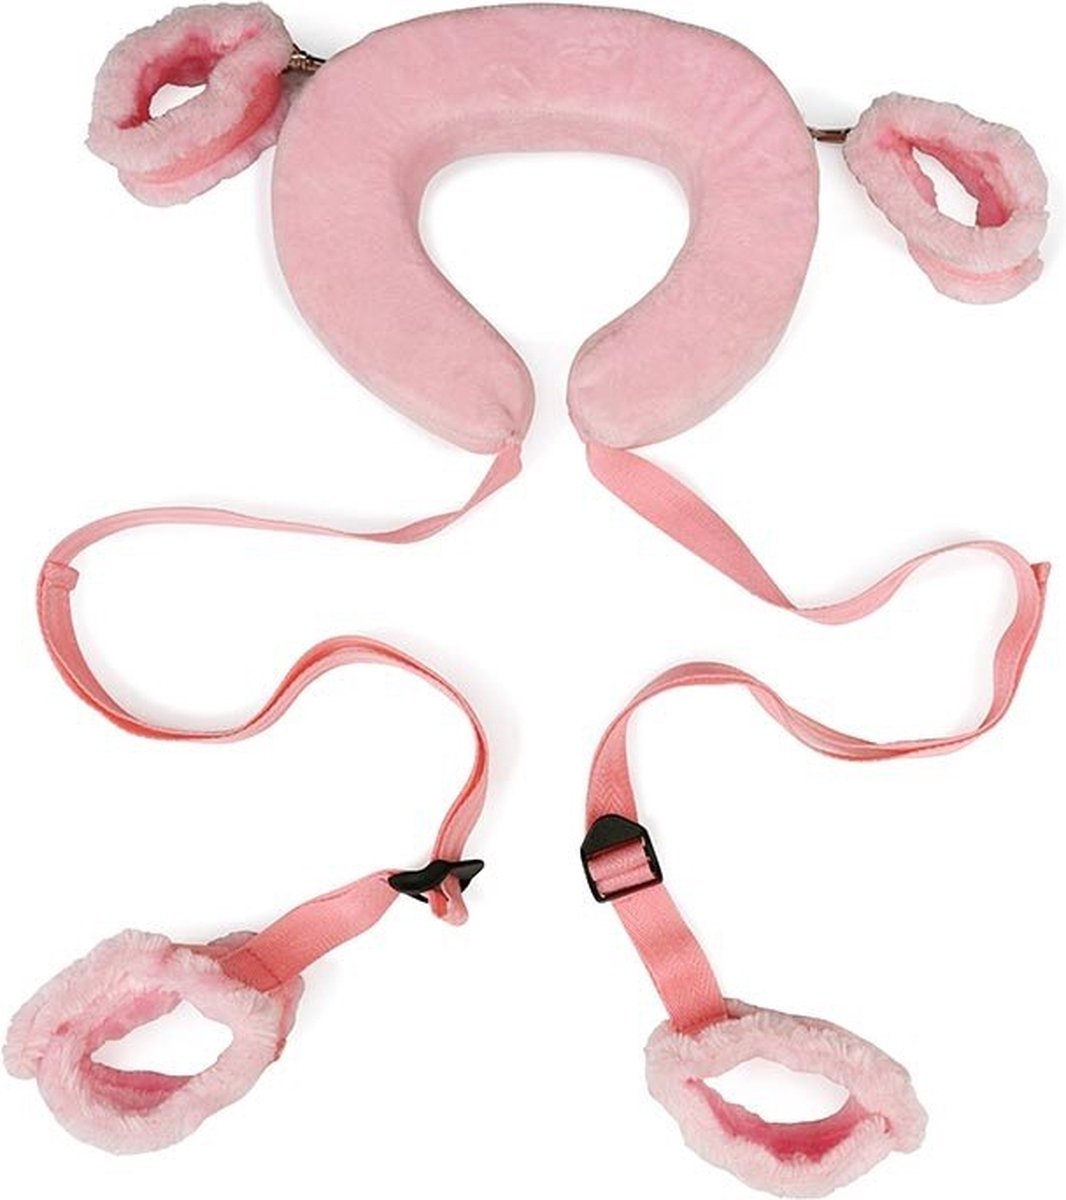 Erodit positie riem -roze- verstelbare riemen - bondage -Seks speeltje - BDSM foto